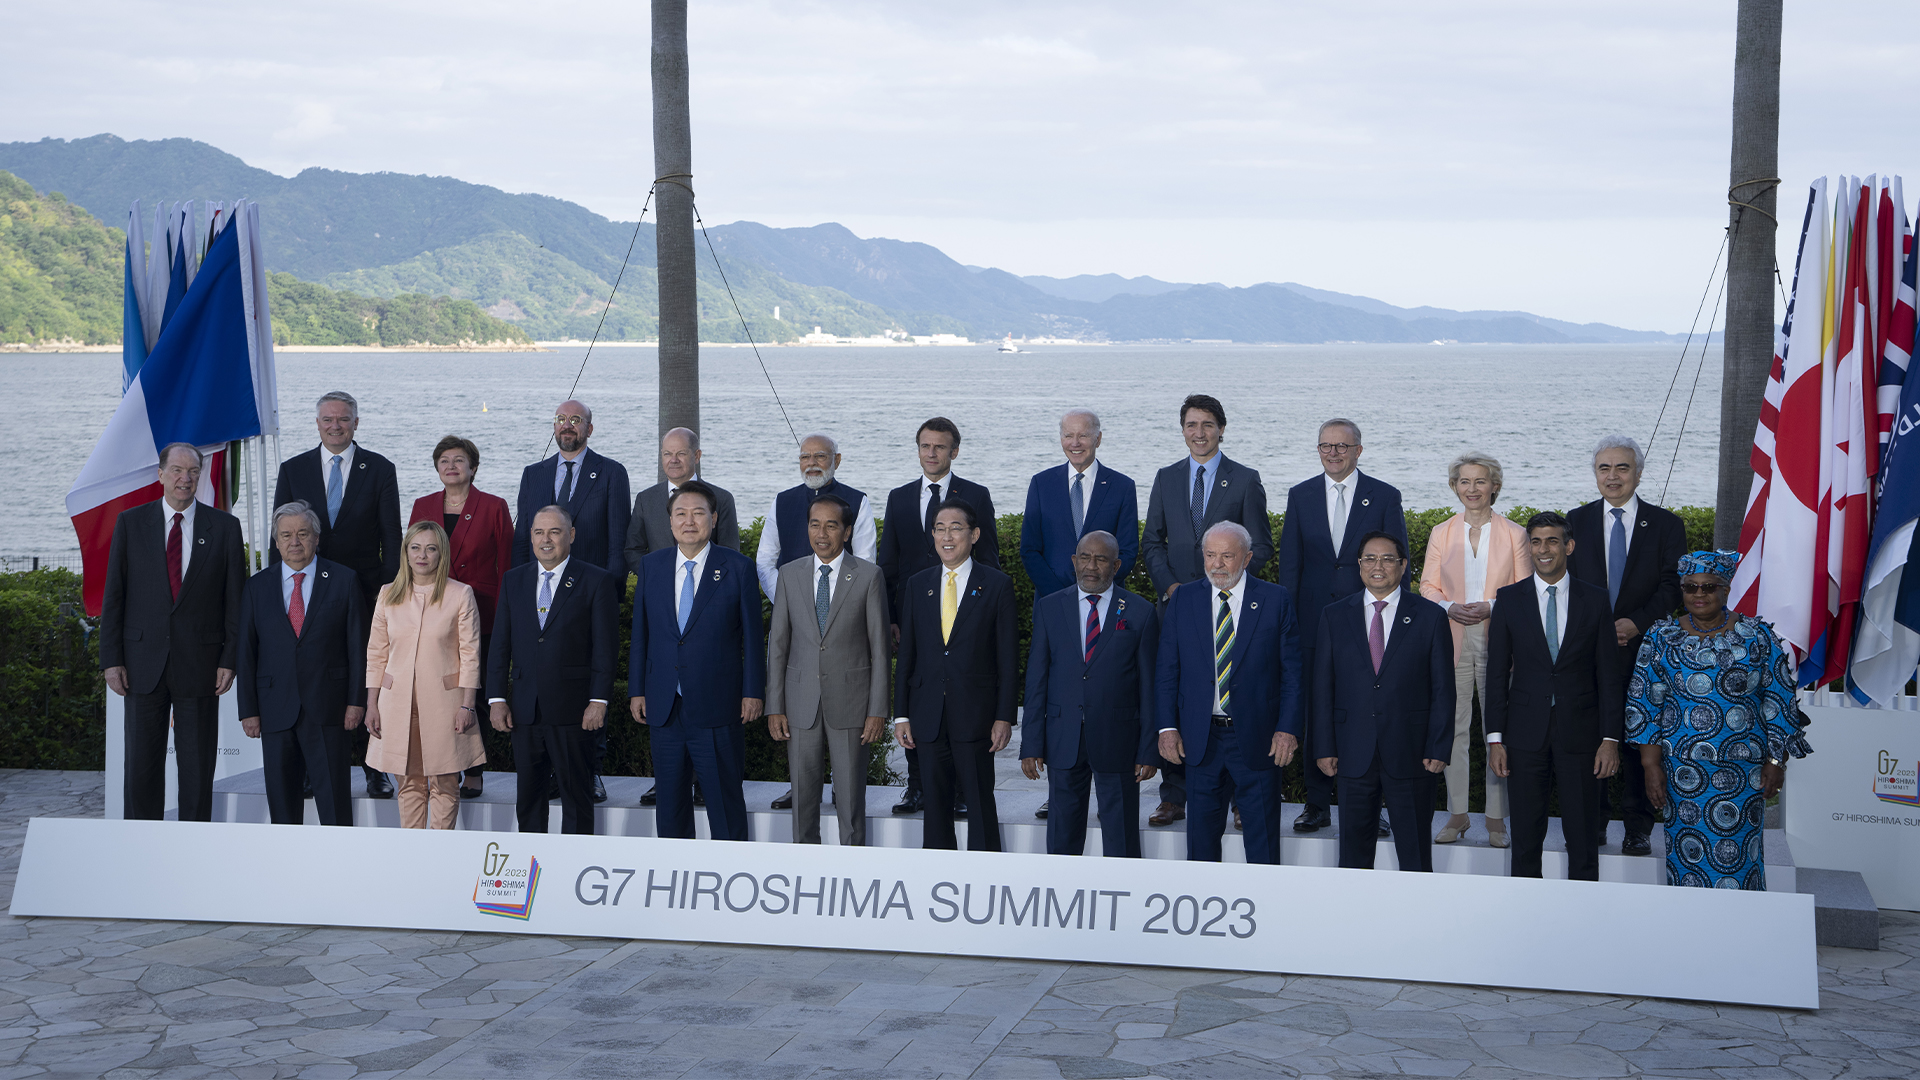 Les dirigeants du G7 sont prêts à établir des relations «constructives» avec la Chine, mais ils prévoient également de se protéger en renforçant la résilience économique.